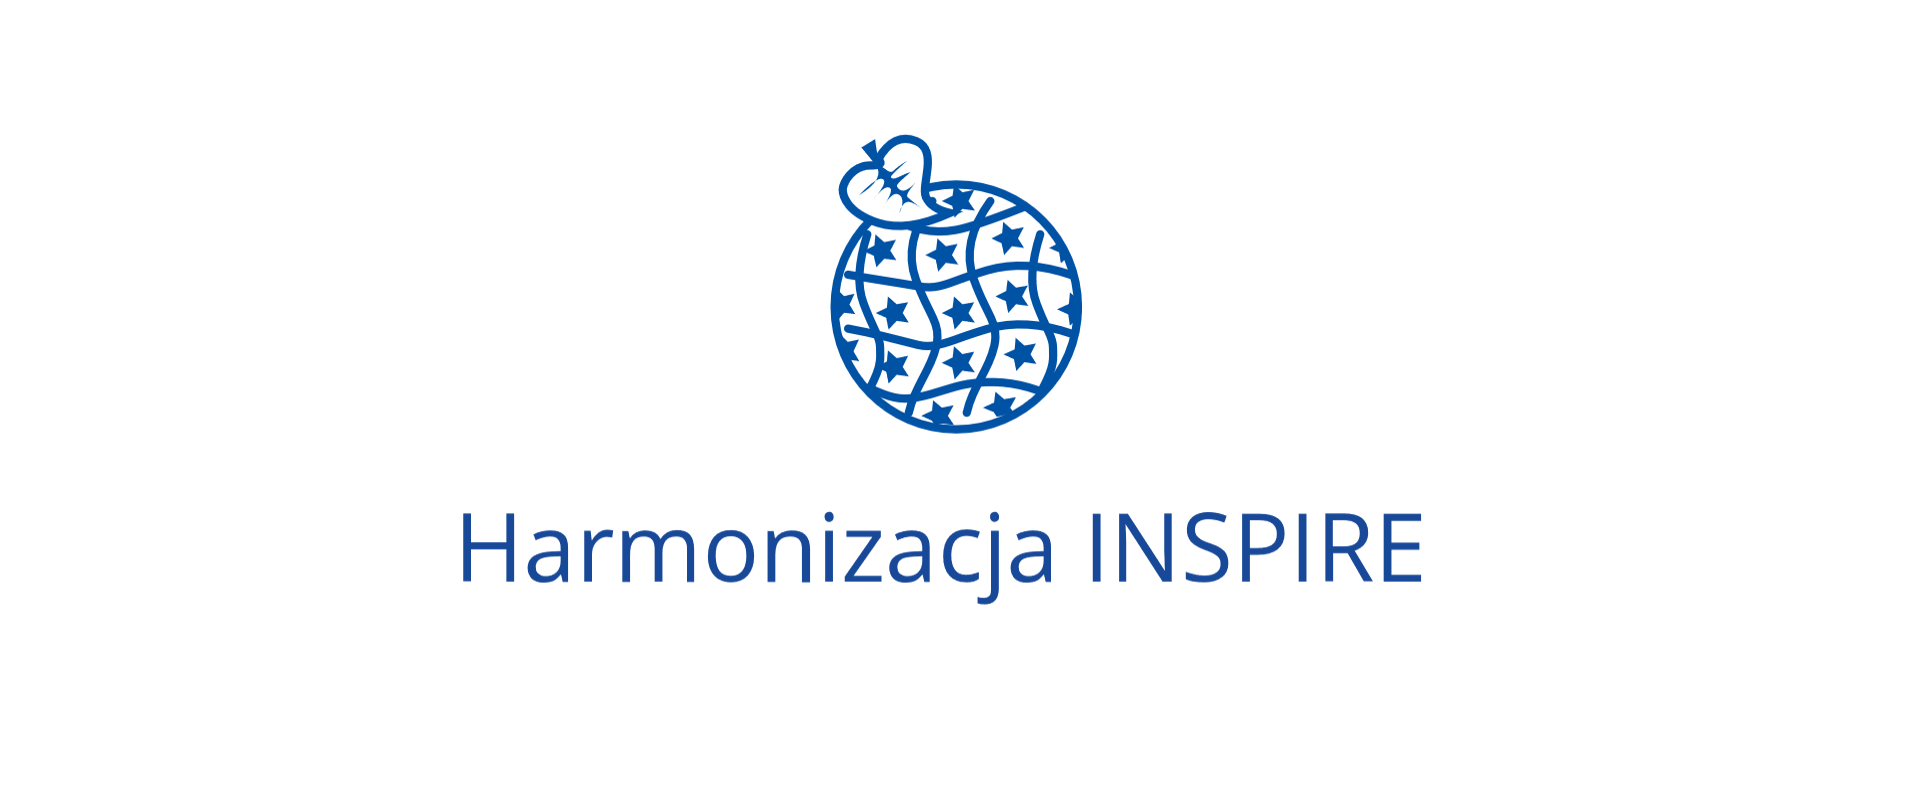  Harmonizacja INSPIRE - Logo INSPIRE: koło wypełnione deseniem (na białym tle niebieskie gwiazdki).